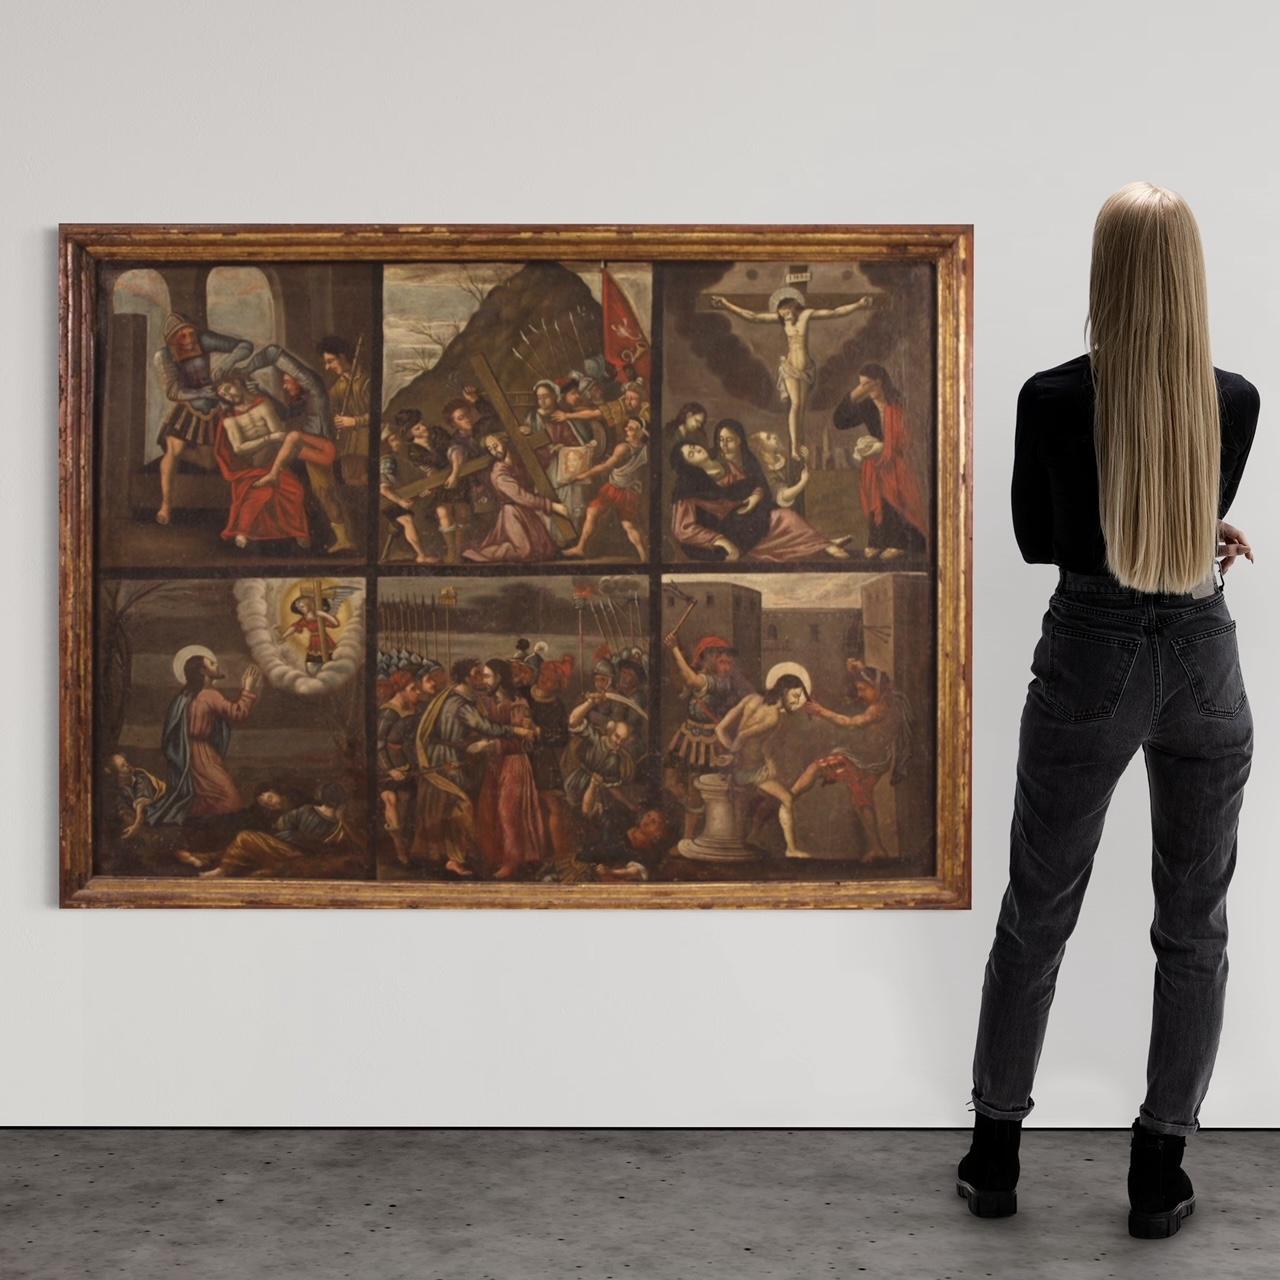 Großes italienisches Gemälde aus der zweiten Hälfte des 17. Jahrhunderts. Ölgemälde auf Leinwand von guter malerischer Qualität, das ein religiöses Thema, Episoden aus dem Leben und der Passion Christi, darstellt. Gemälde mit sechs Szenen des